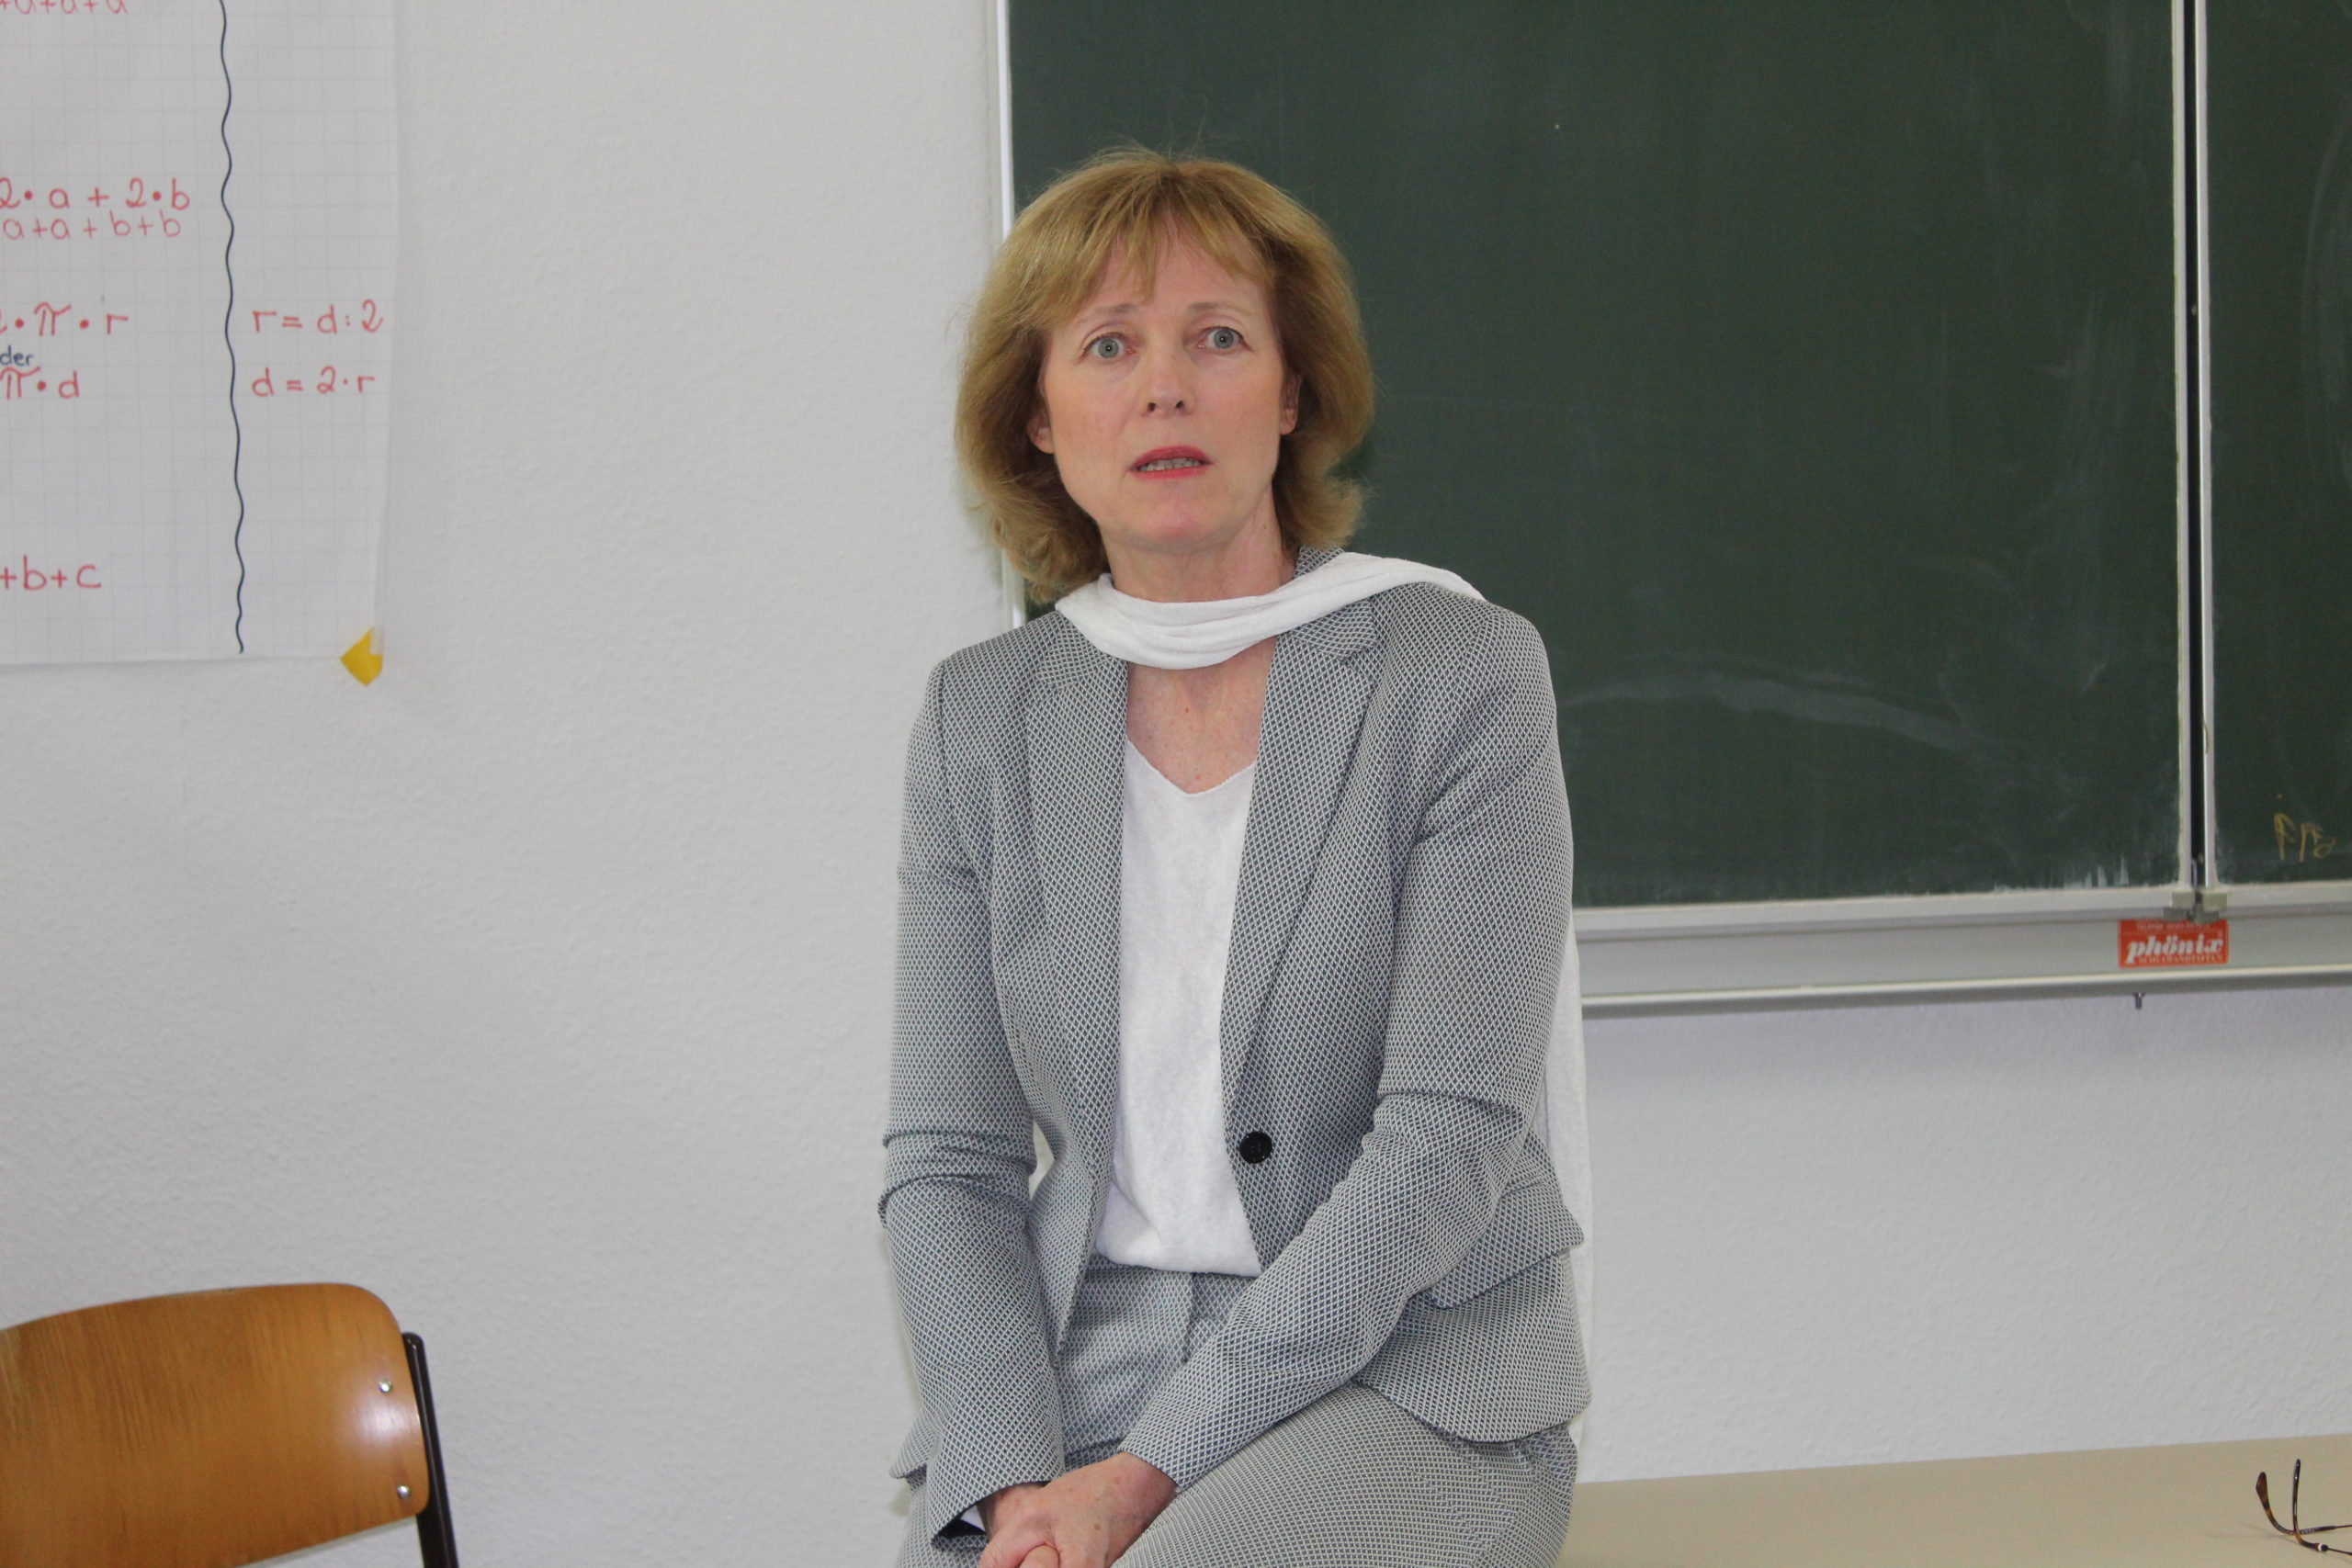 Oberbürgermeisterin Karin Welge hat das Bridon-Werk in Gelsenkirchen besucht. Die geplante Schließung sei ein herber Schlag“, sagte sie.